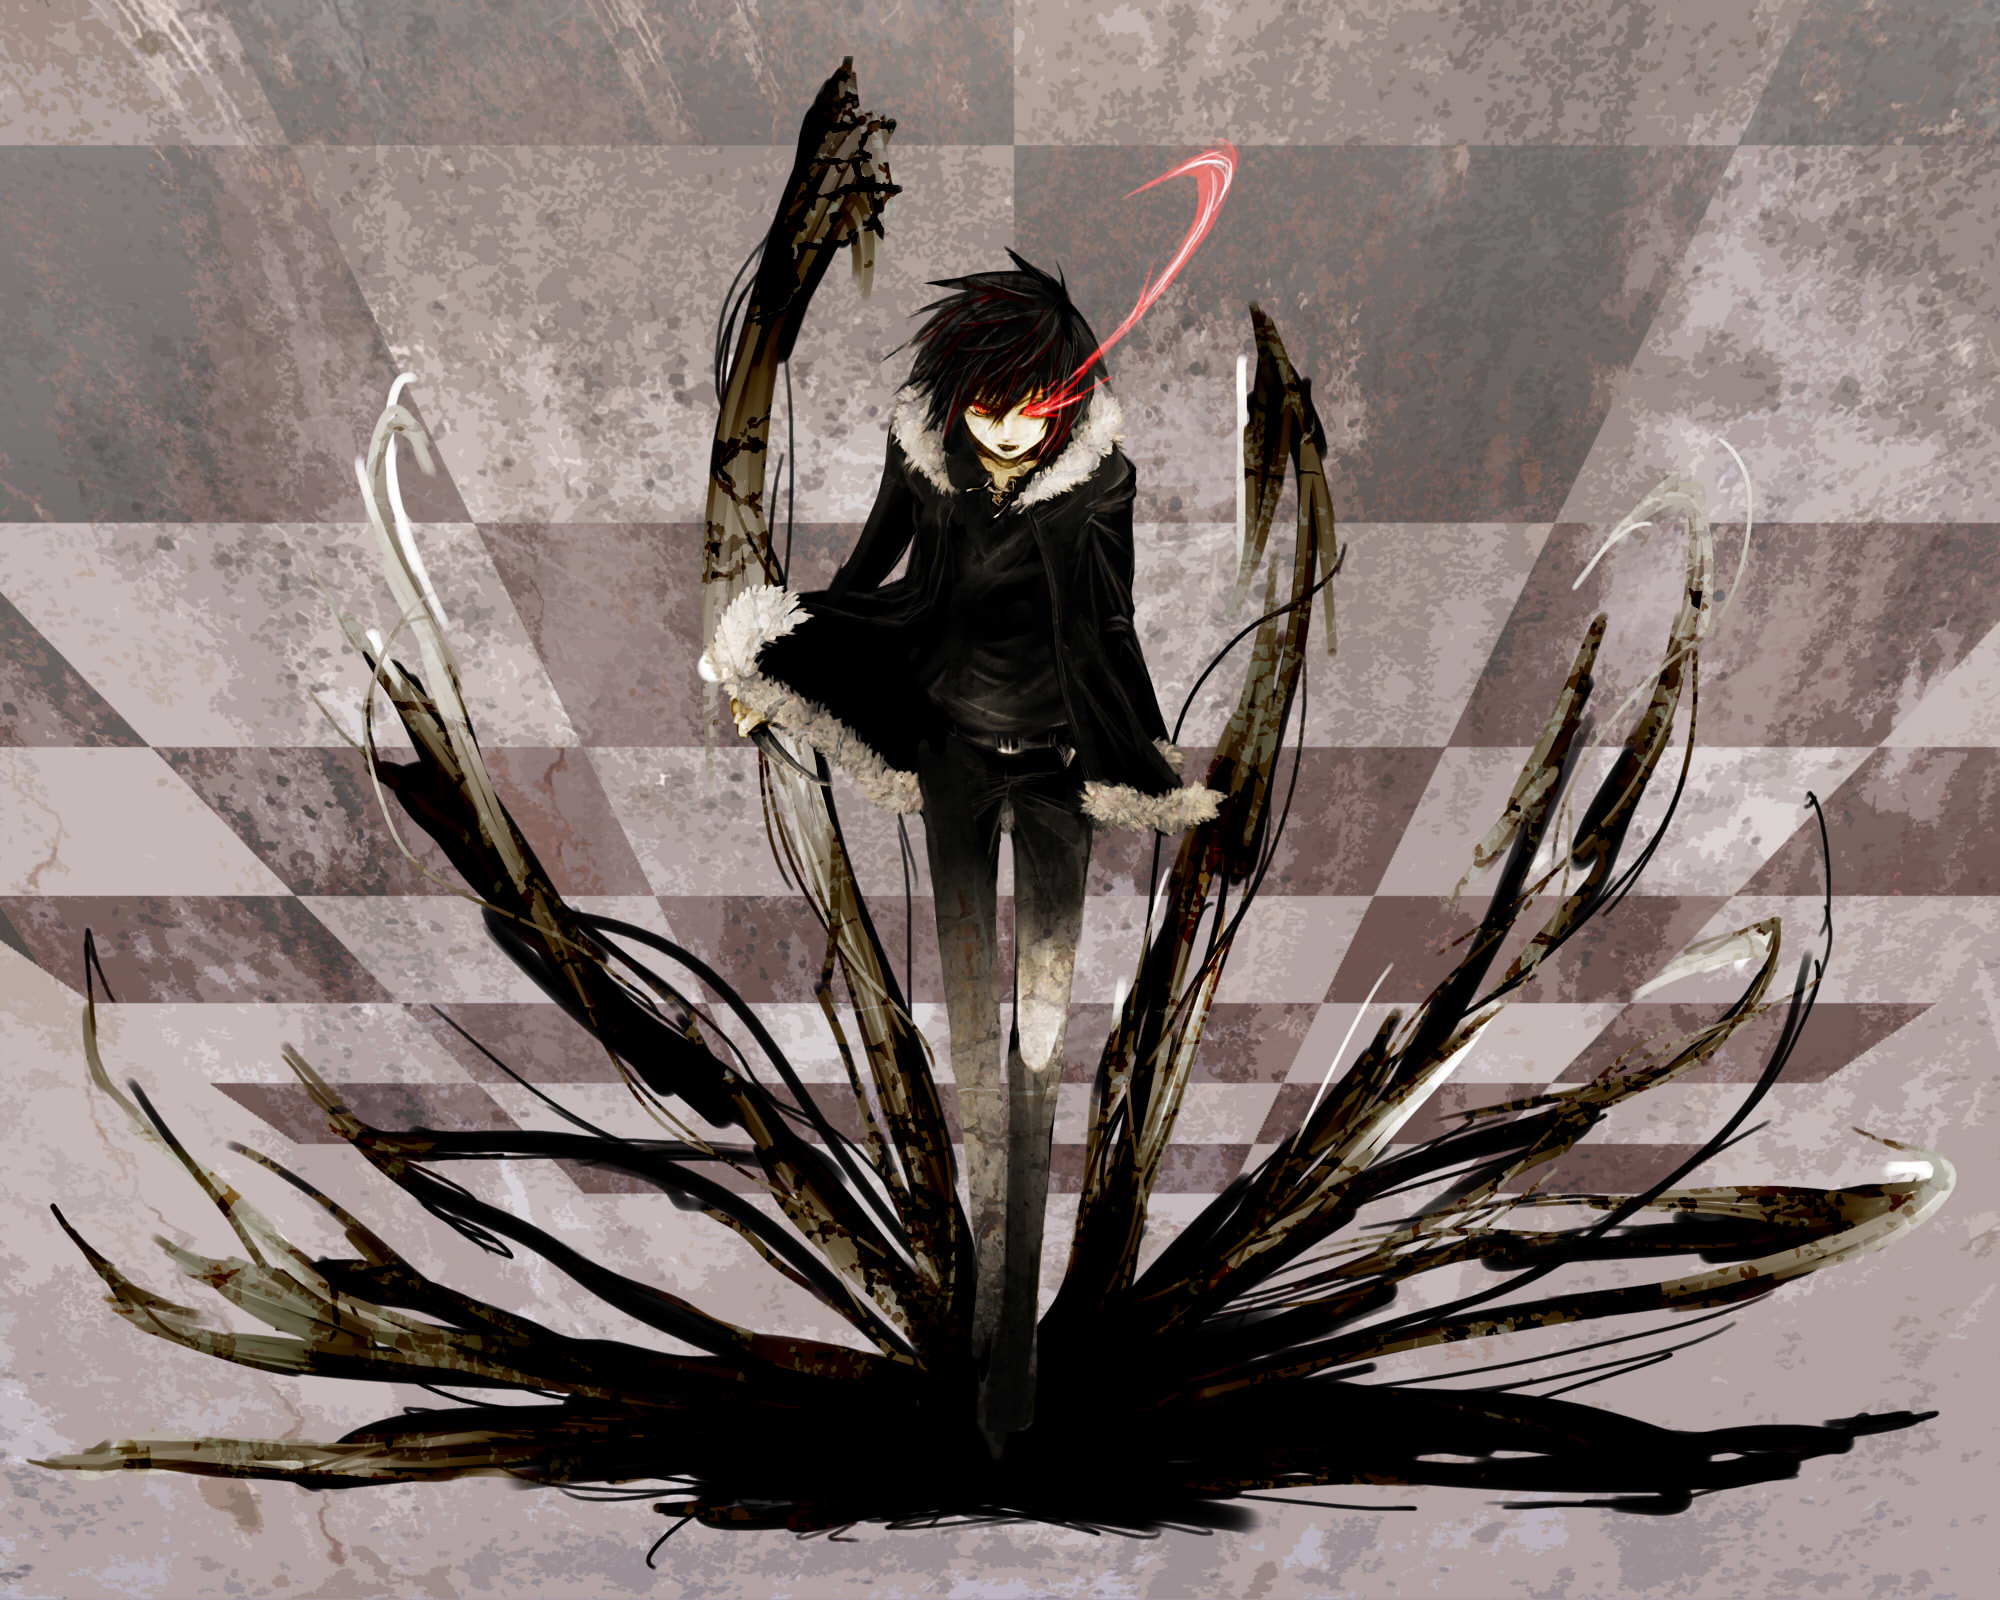 Male, Parody, X666x, Orihara Izaya, Black Rock Shooter, - Anime Boy With  Dark Power - 2000x1600 Wallpaper 